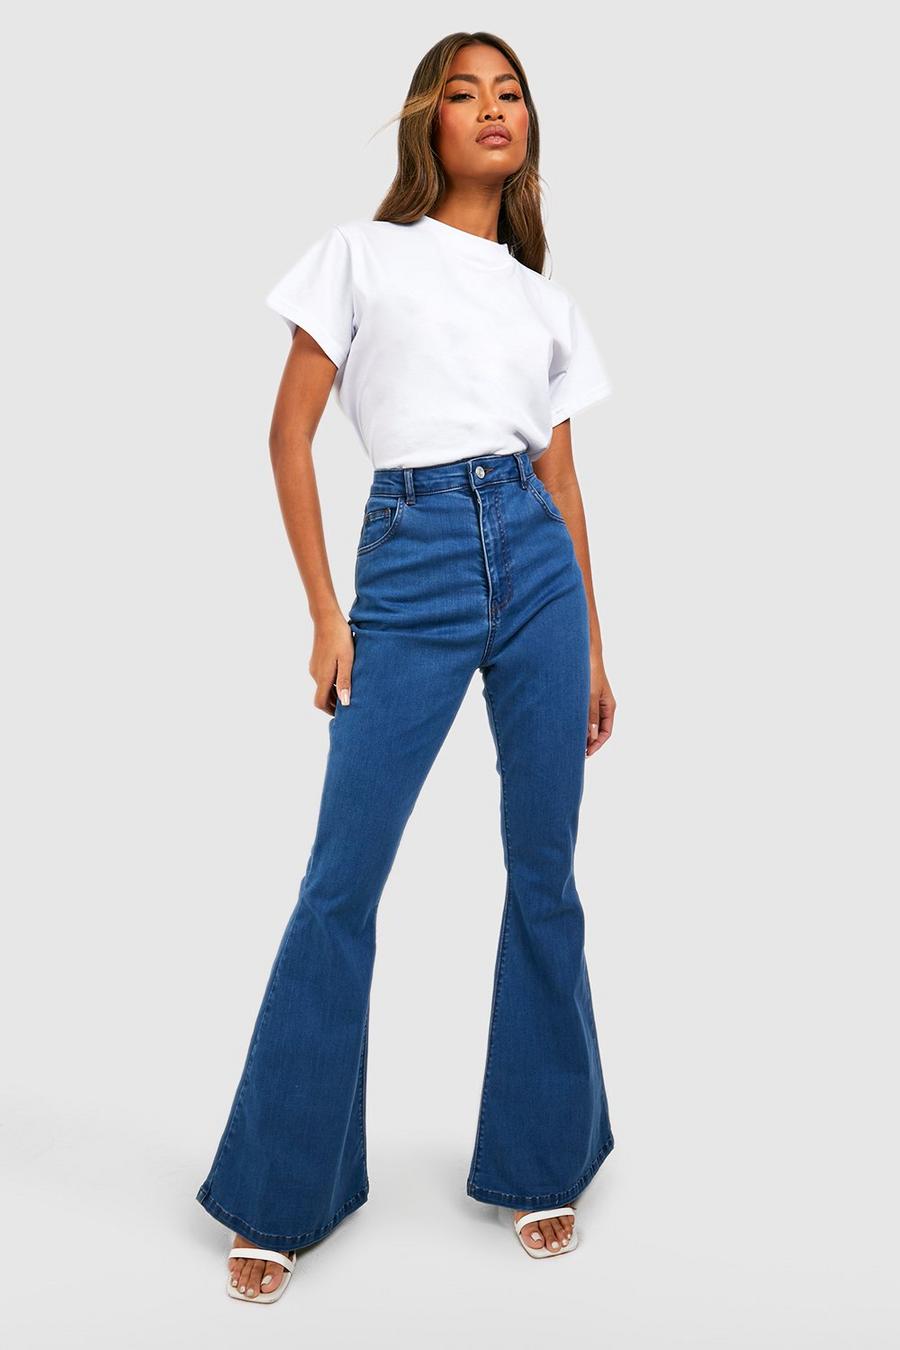 Women's High Rise Vintage Flare Jean, Women's Sale